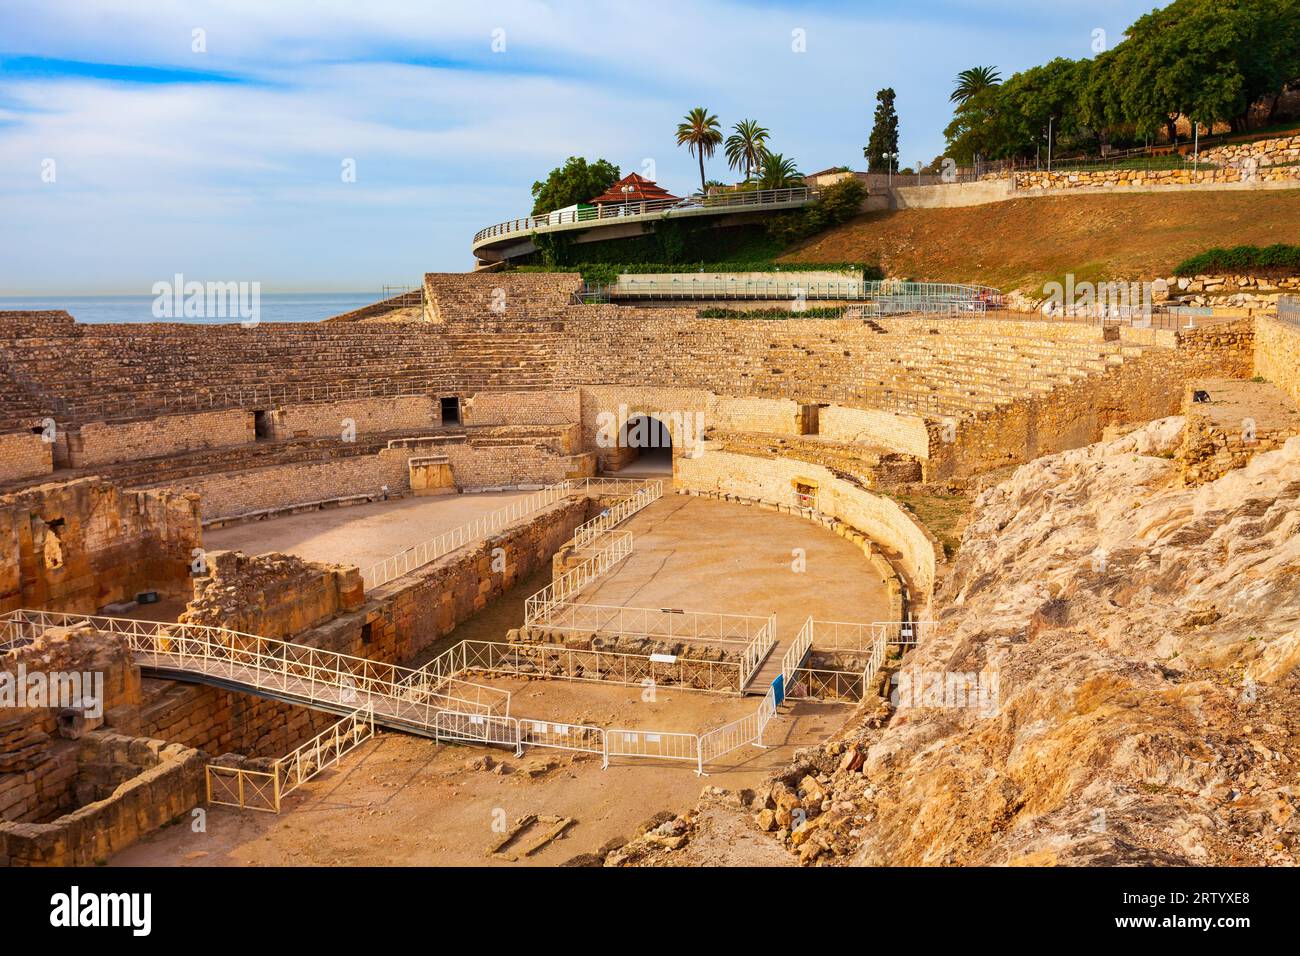 L'anfiteatro di Tarragona è un anfiteatro romano situato nella città di Tarragona, nella regione della Catalogna, in Spagna. Foto Stock